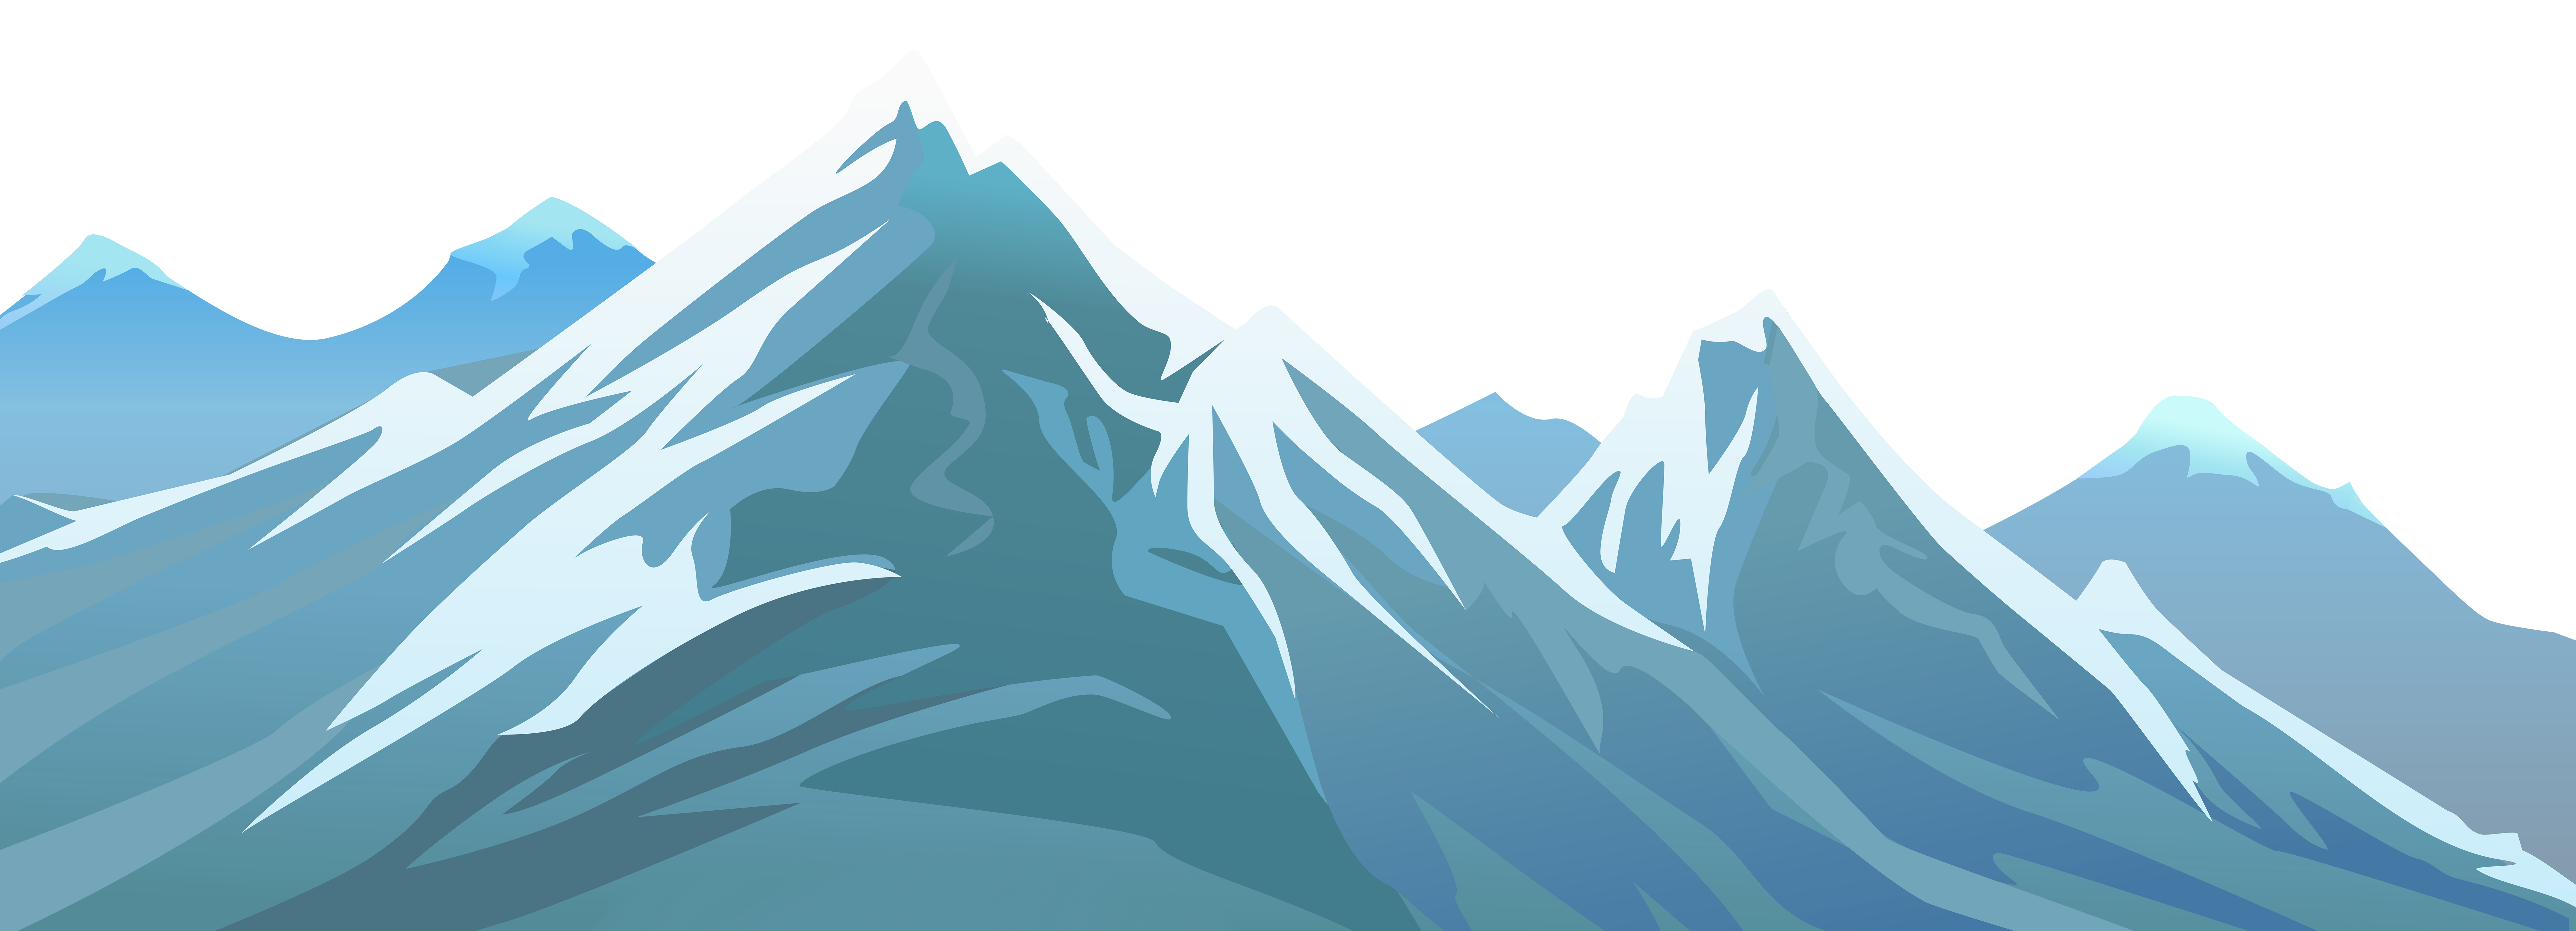 Snowy transparent png clip. Mountain clipart mountain landscape